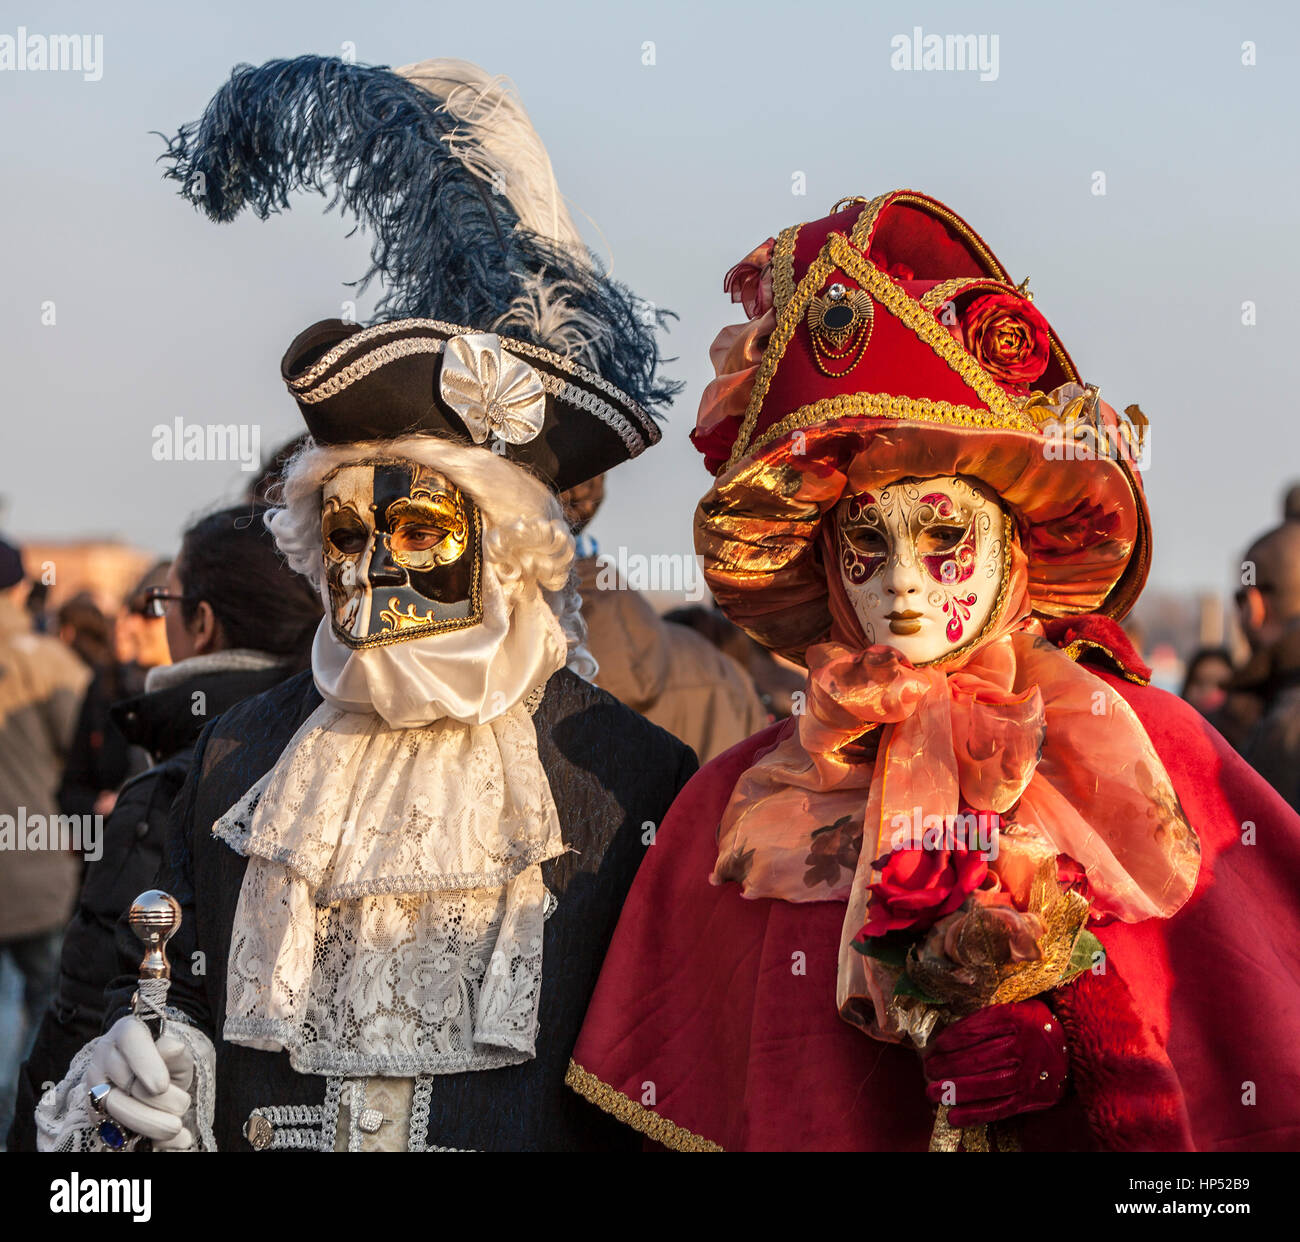 Venedig, Italien - 18. Februar 2012: ökologische Porträt zweier Personen, die schönen bunten Kostümen und Masken tragen, während der Karneval von Venedig. Stockfoto